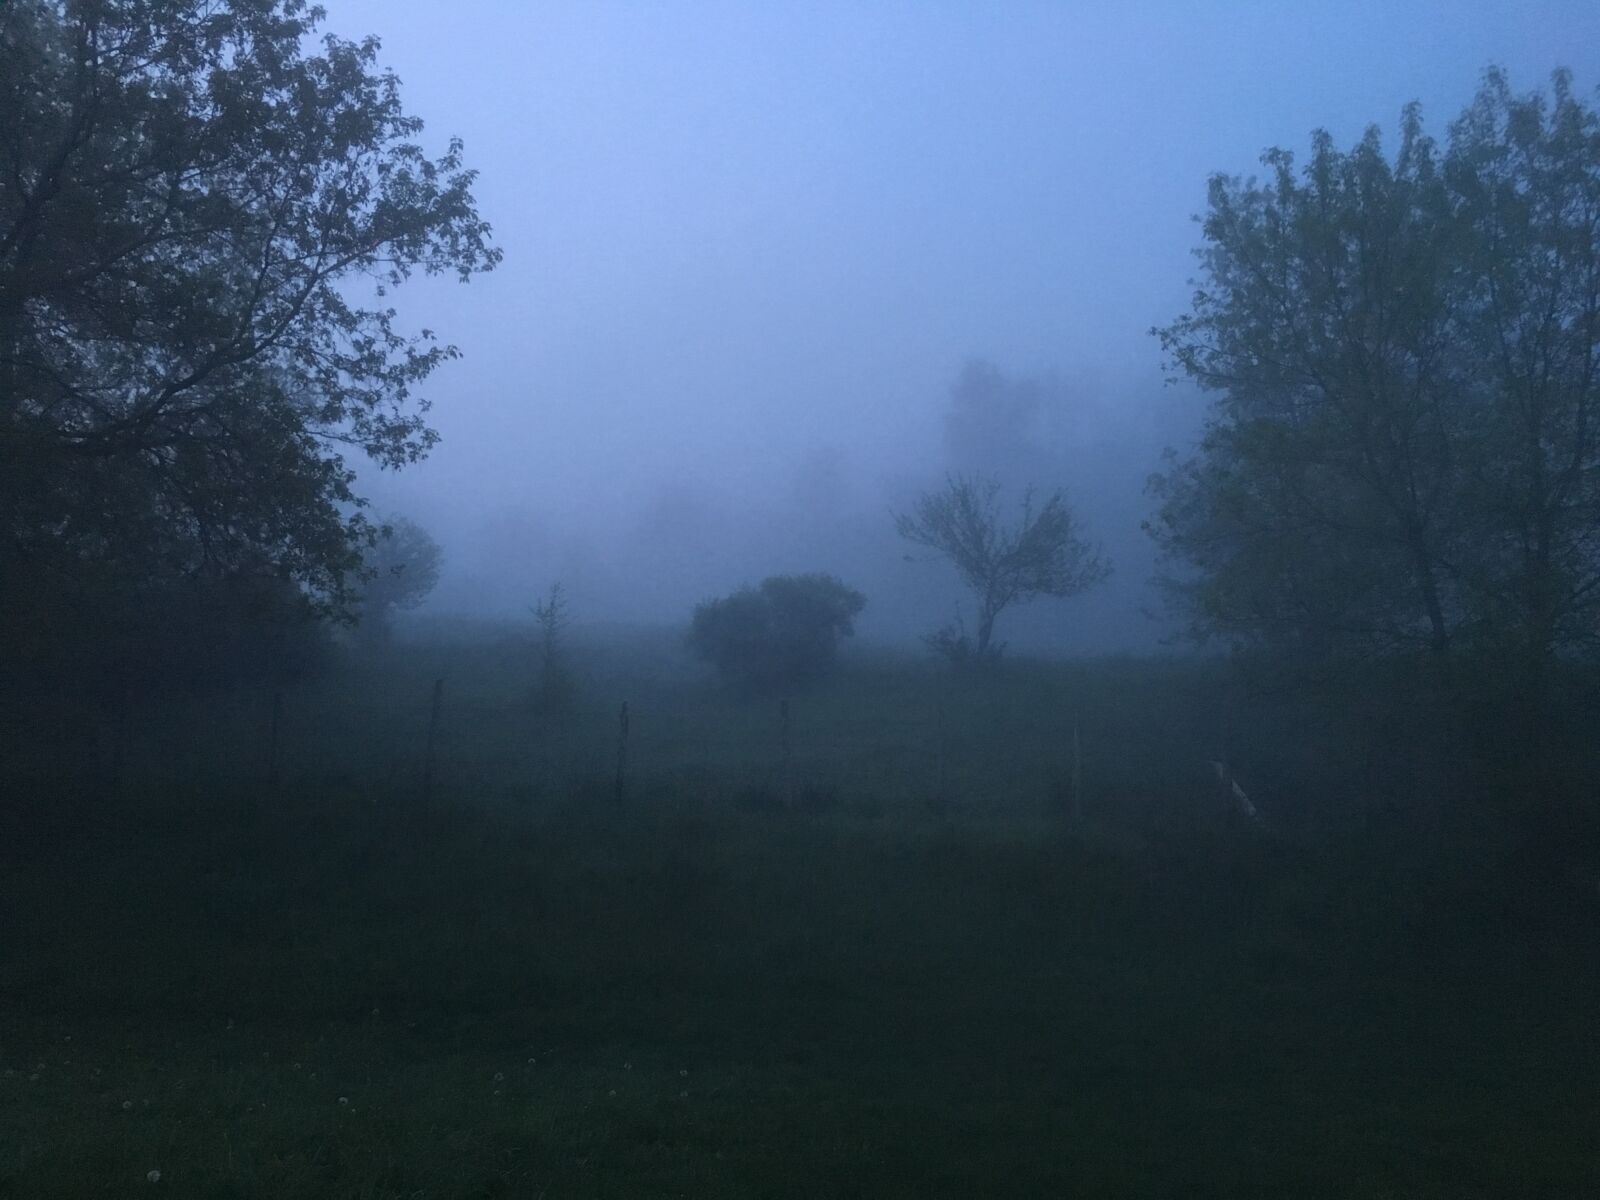 Apple iPhone 6s sample photo. Farm, fog, foggy photography